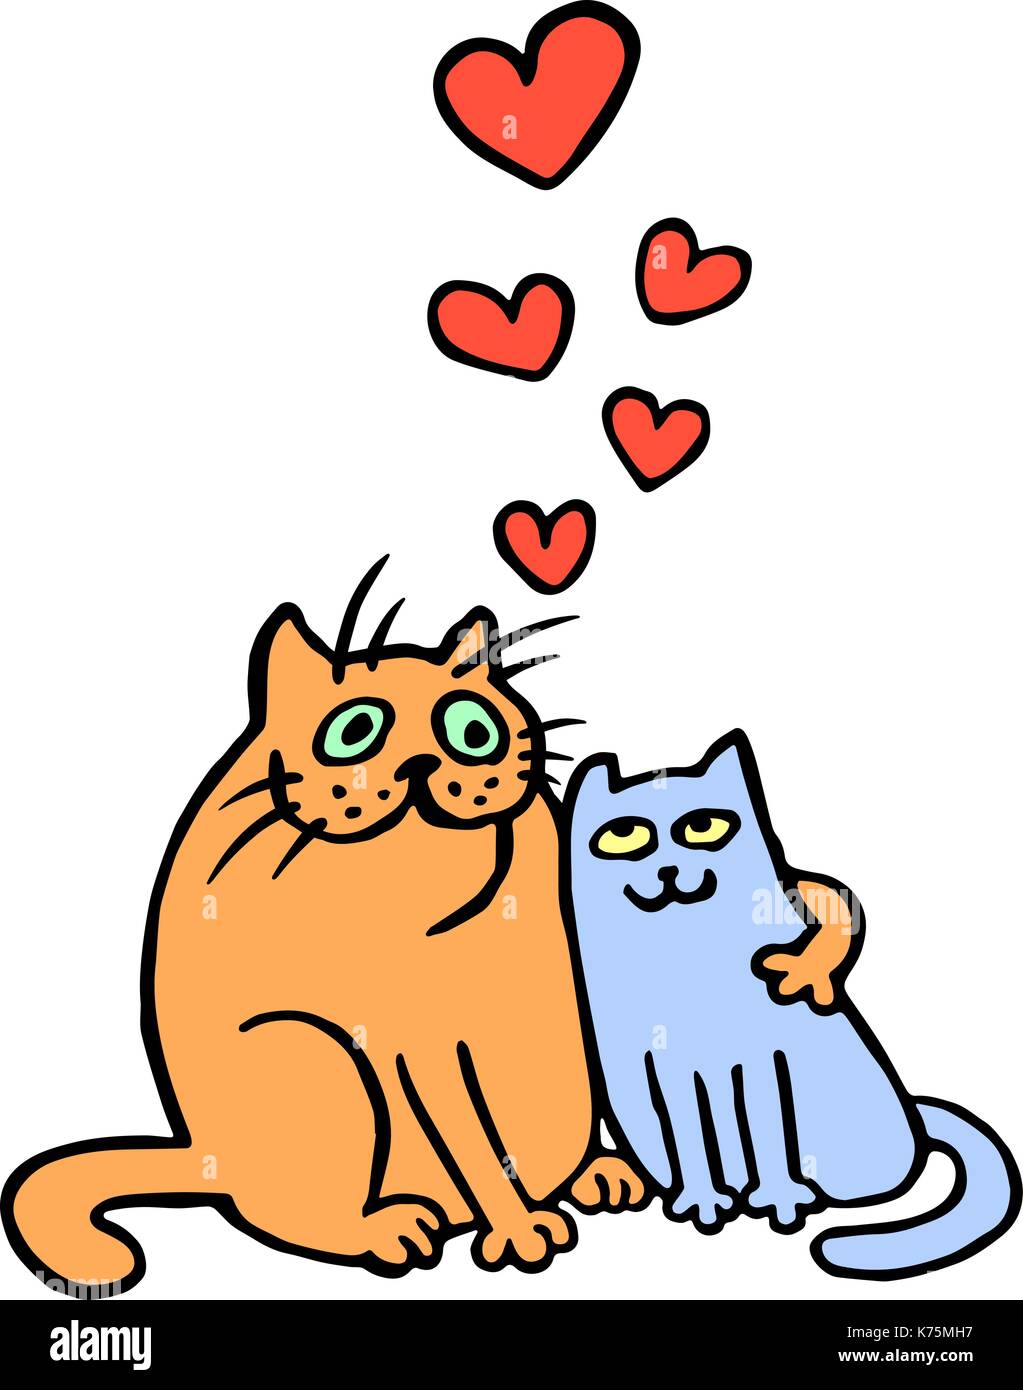 Süße verliebte Katzen in gelben und blauen Farbtönen. Romantische Stimmung.  niedlich liebe. Freehand digital Maßbild. isolierte Vector Illustration  Stock-Vektorgrafik - Alamy